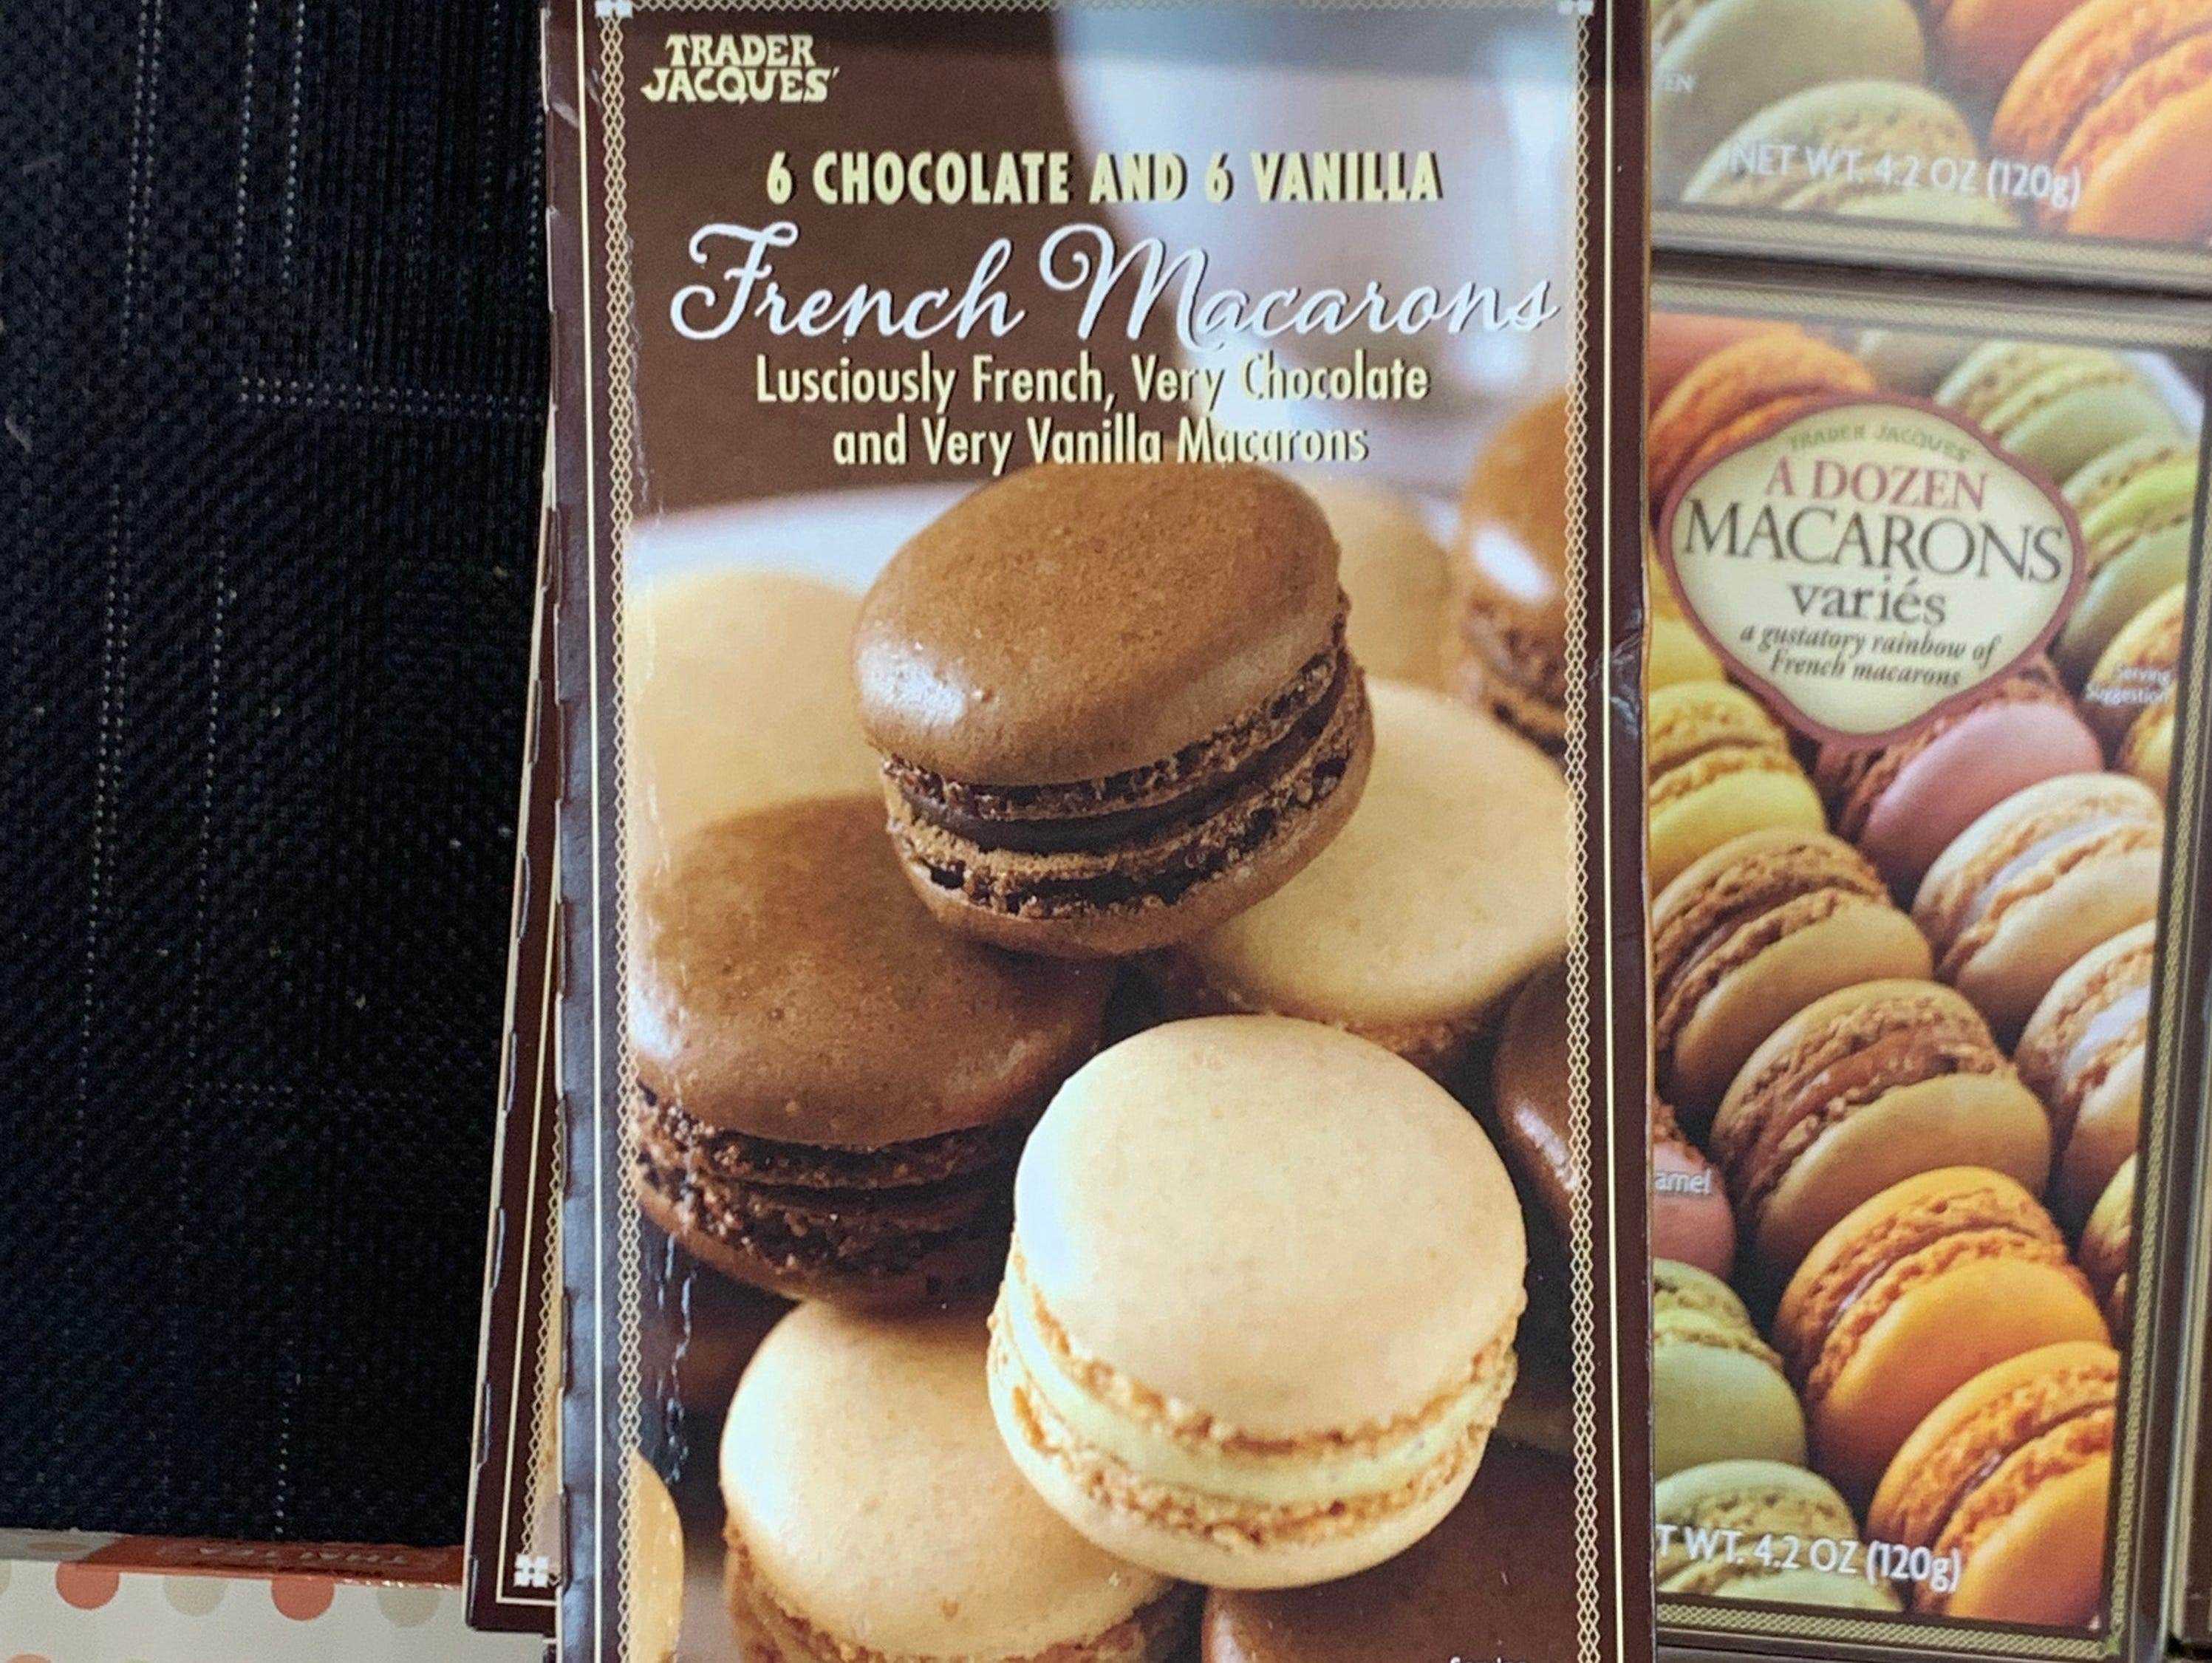 Französische Macarons im Tiefkühlregal von Trader Joe